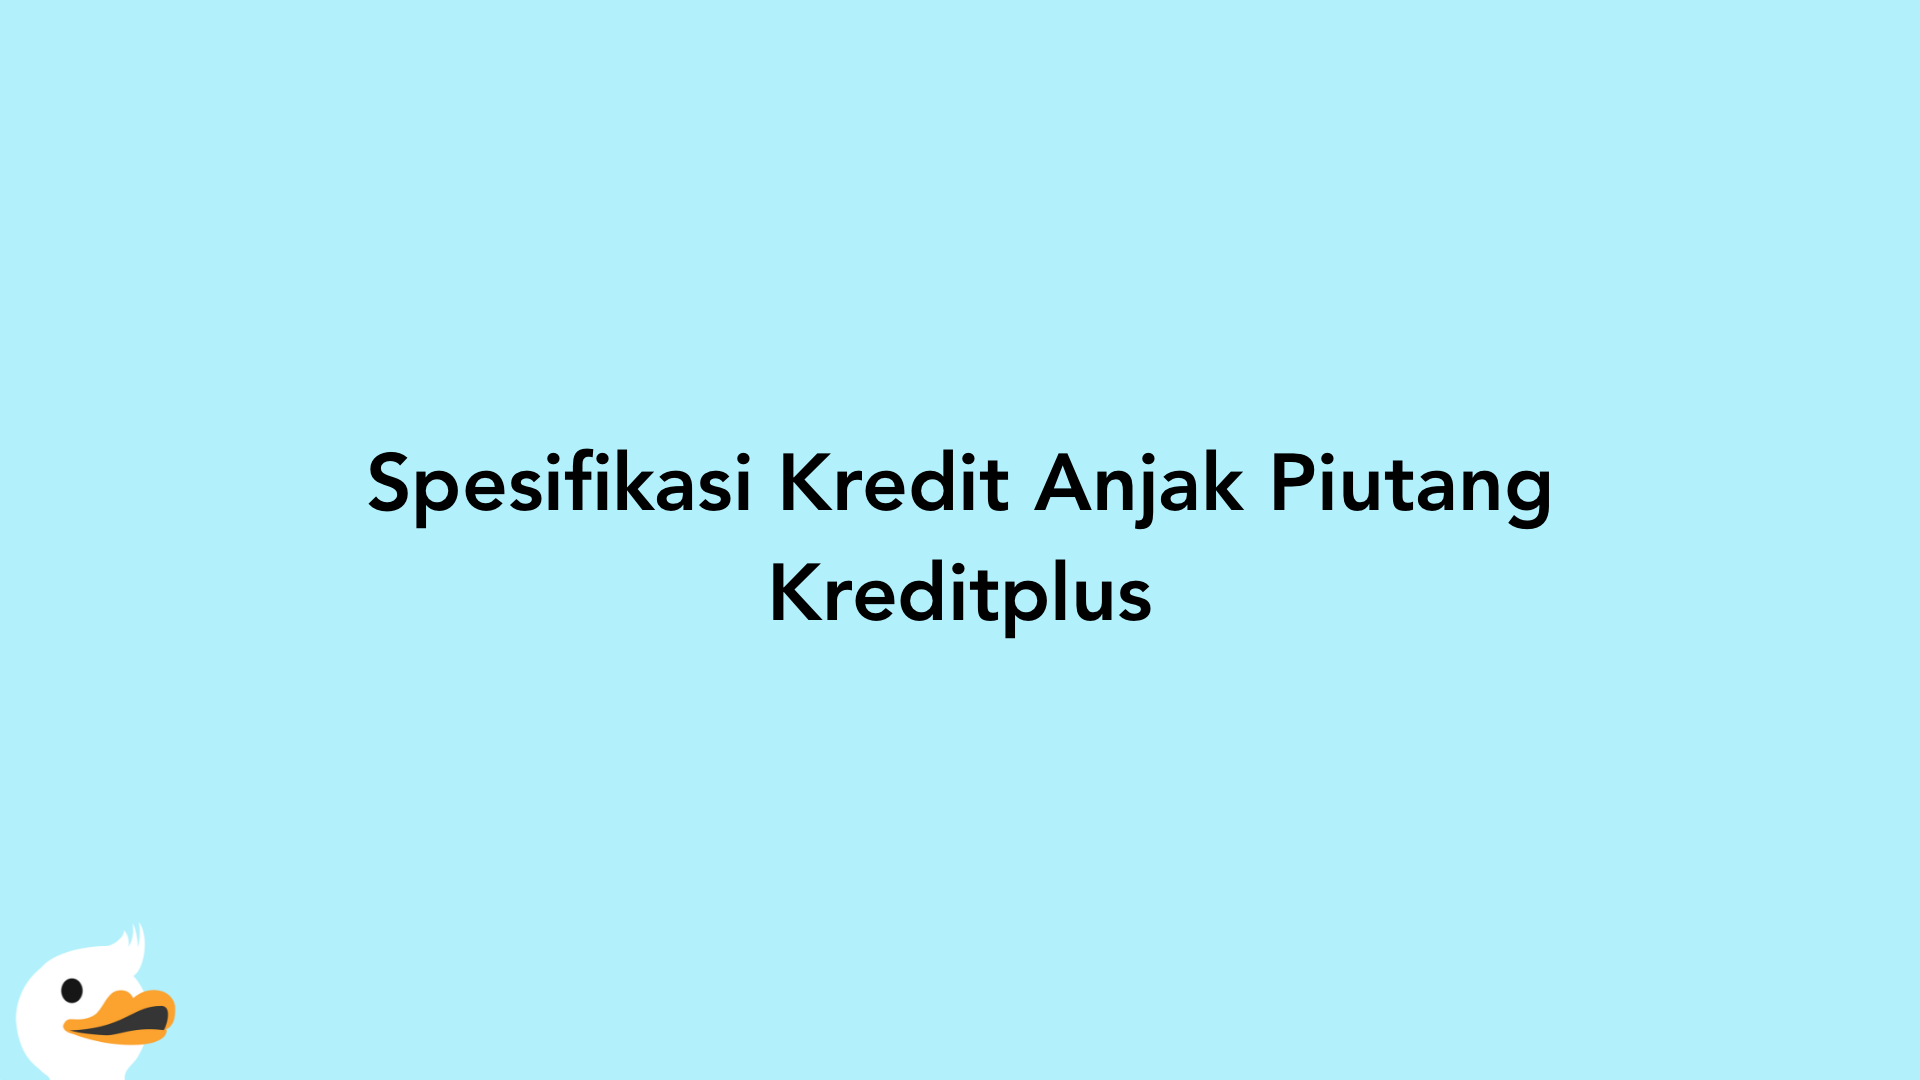 Spesifikasi Kredit Anjak Piutang Kreditplus